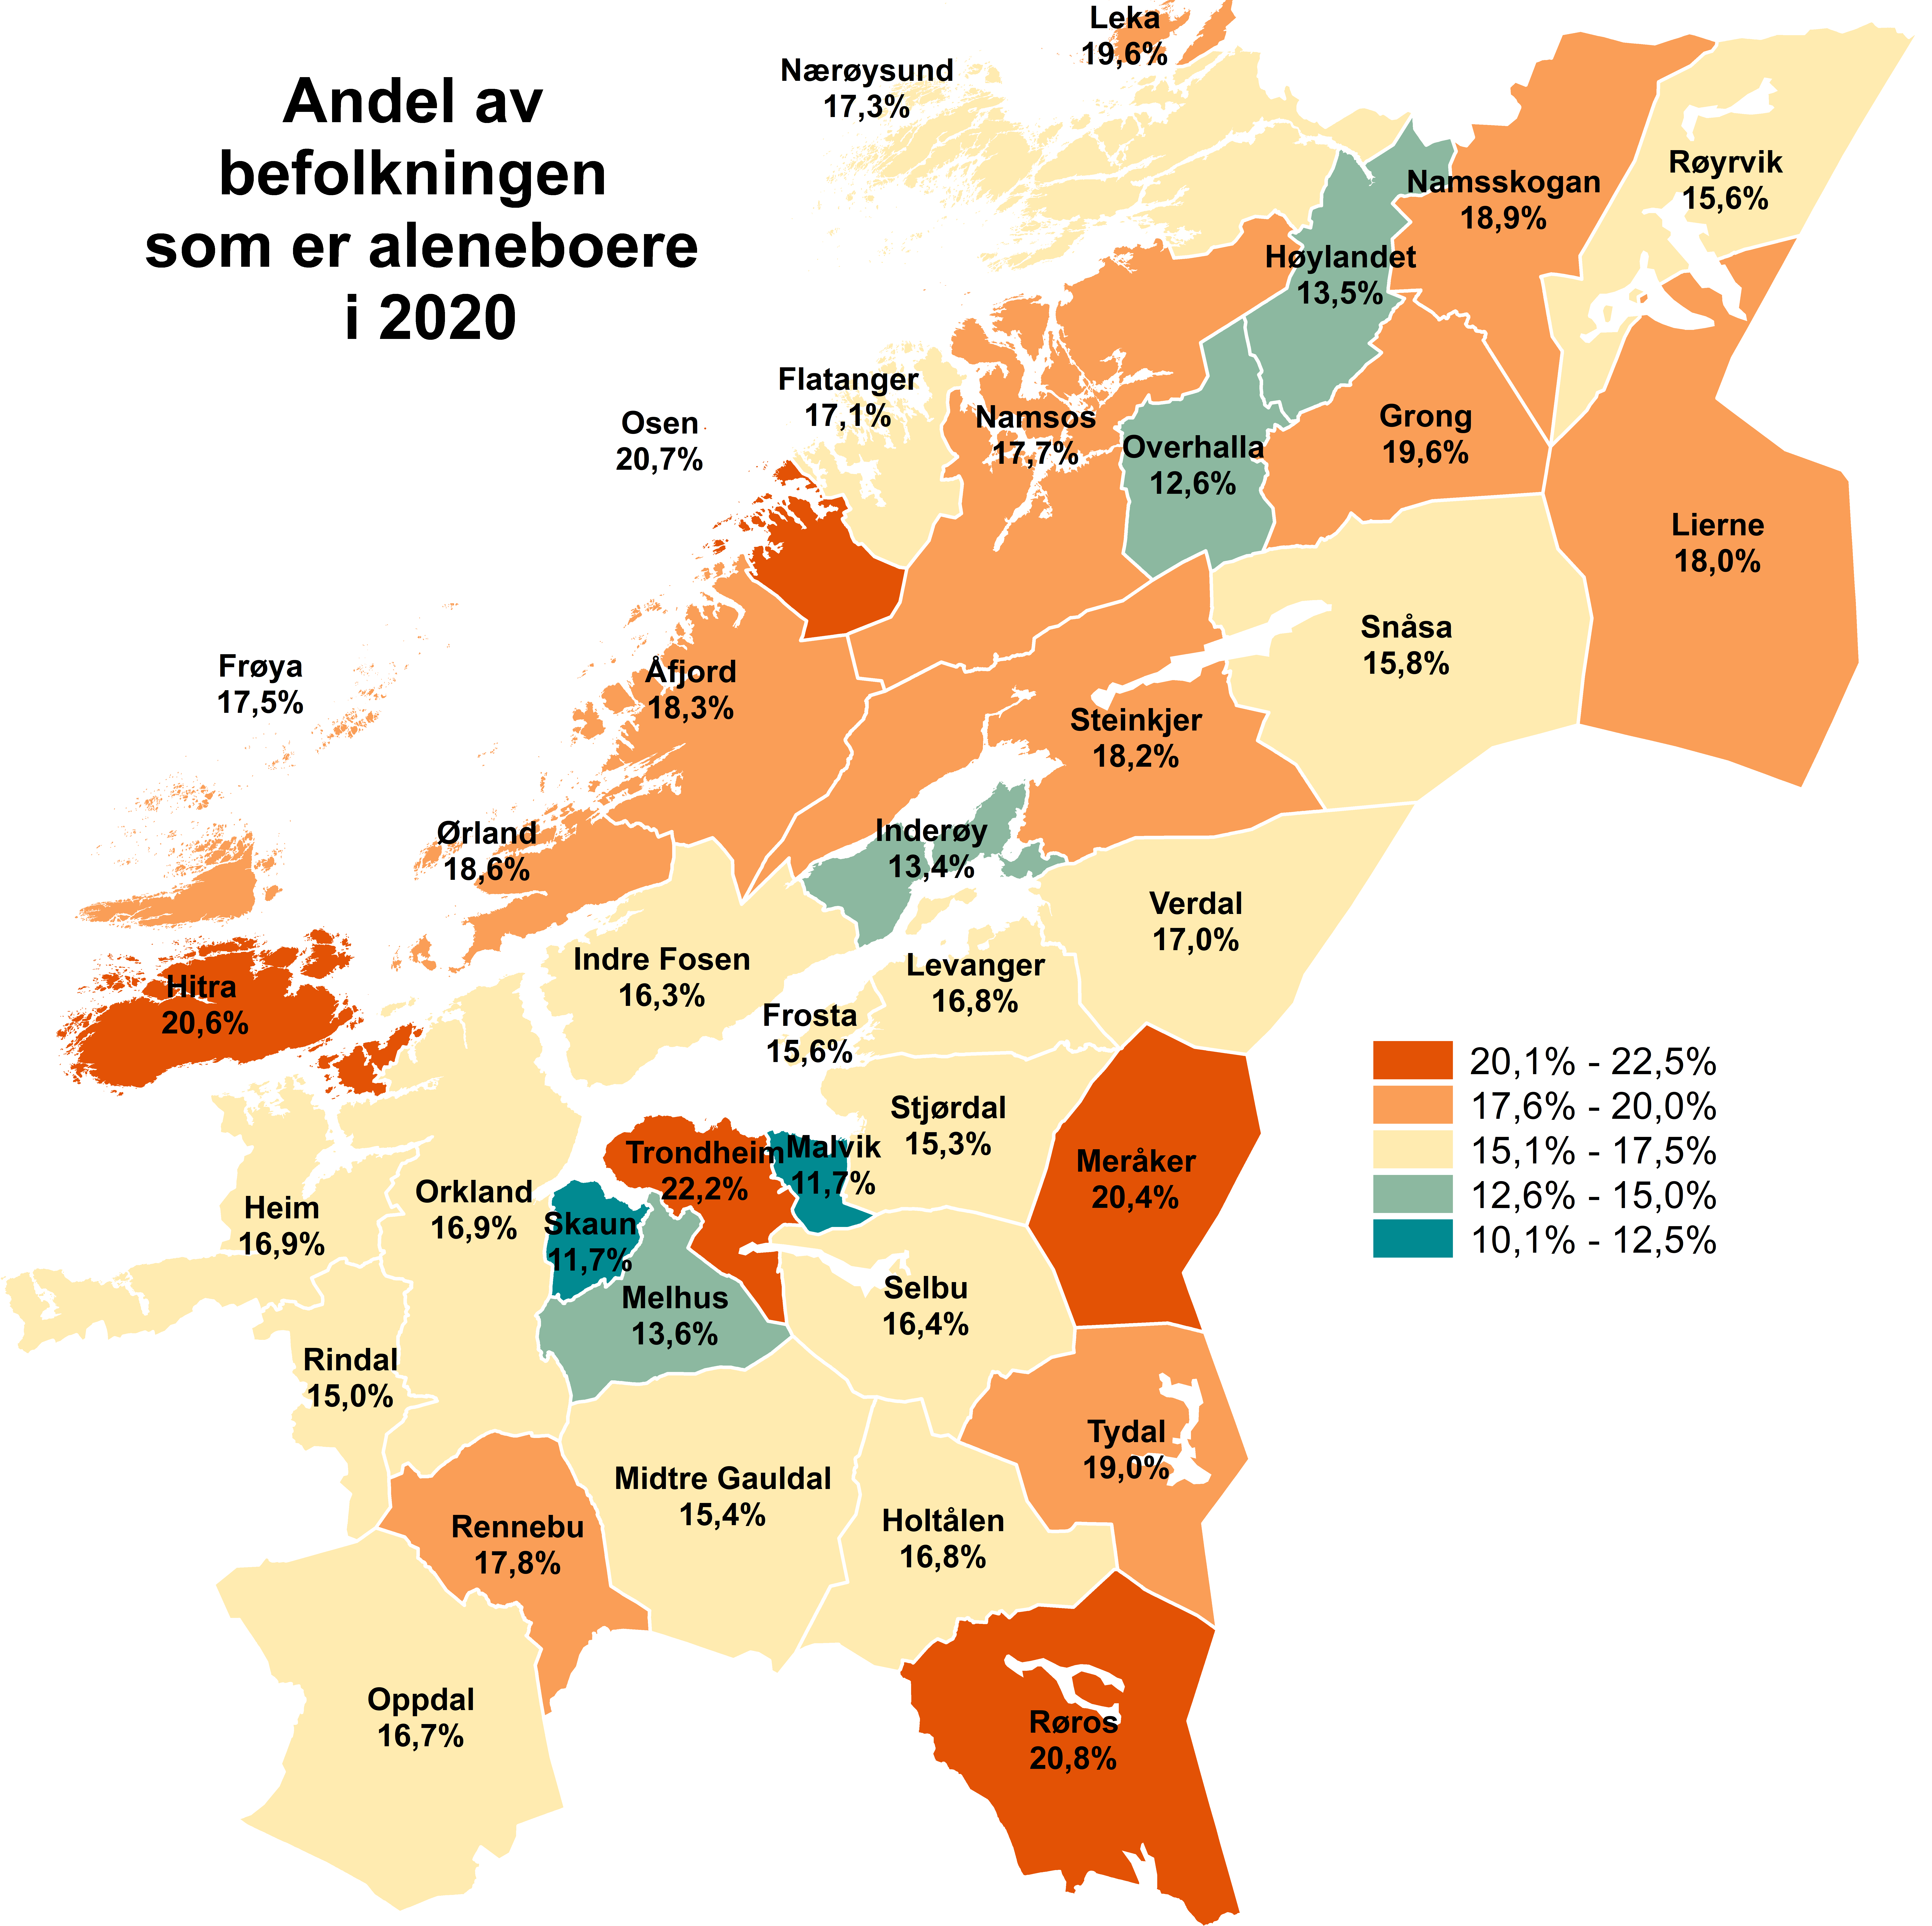 Andel av befolkningen som er aleneboere i 2020